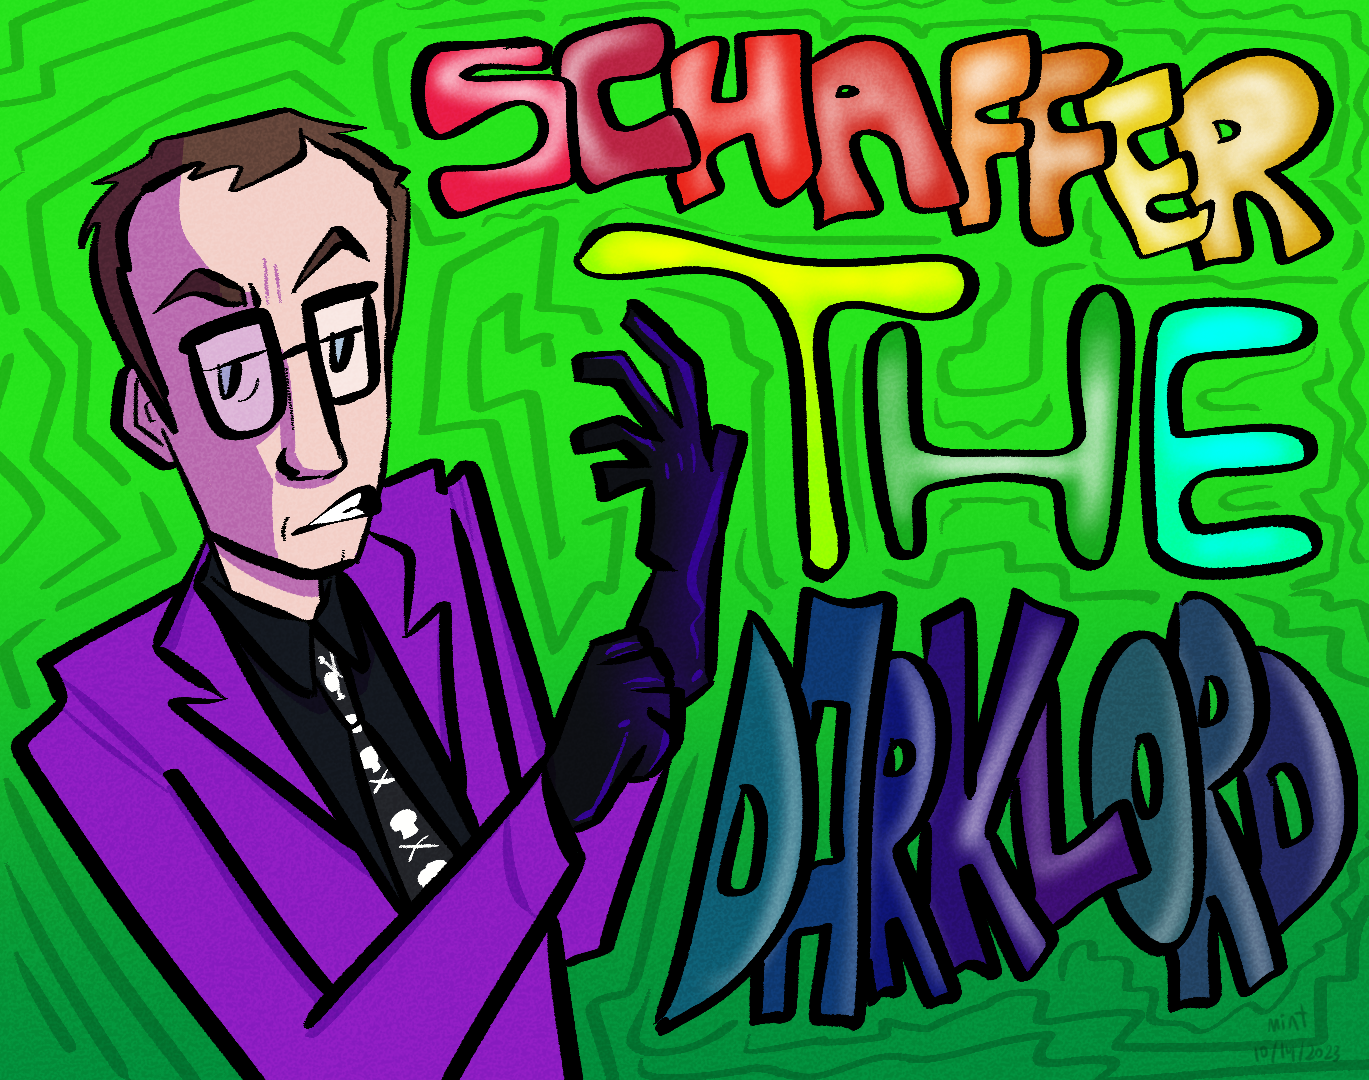 Schaffer the Darklord